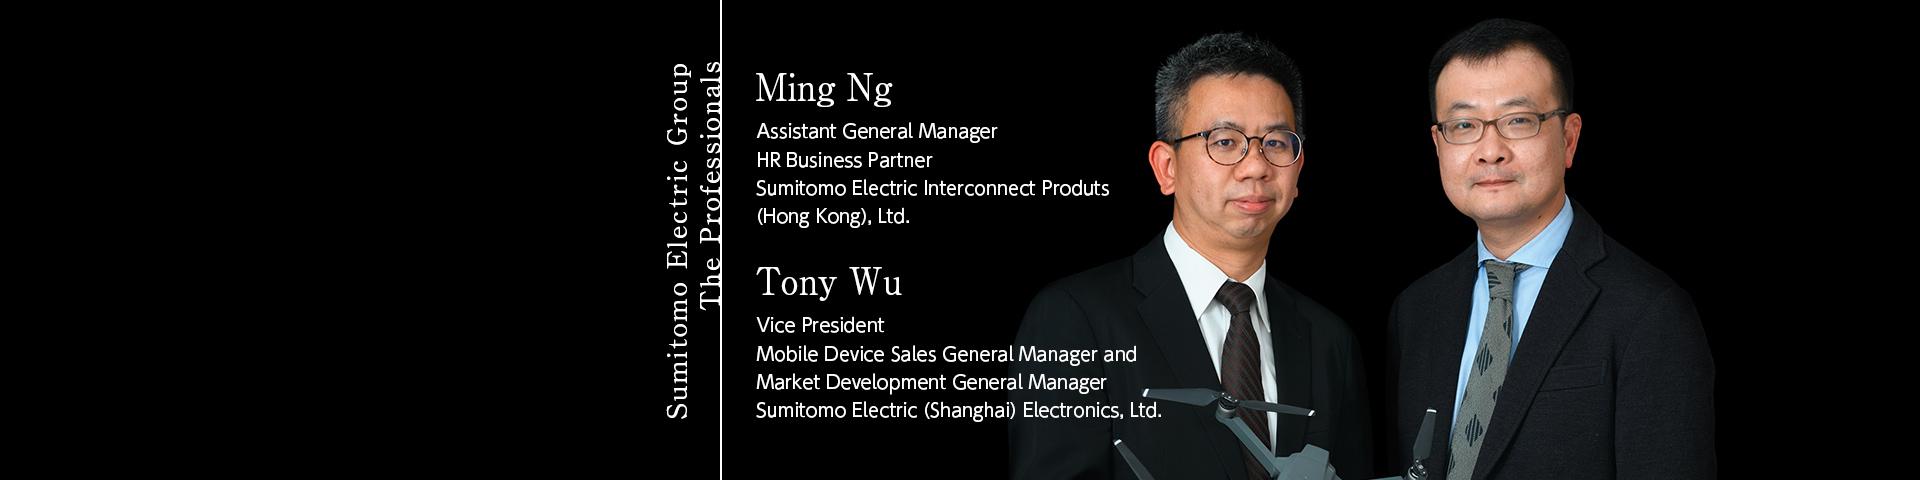 Sumitomo Electric Group The Professionals ~Ming Ng, Tony Wu~ 